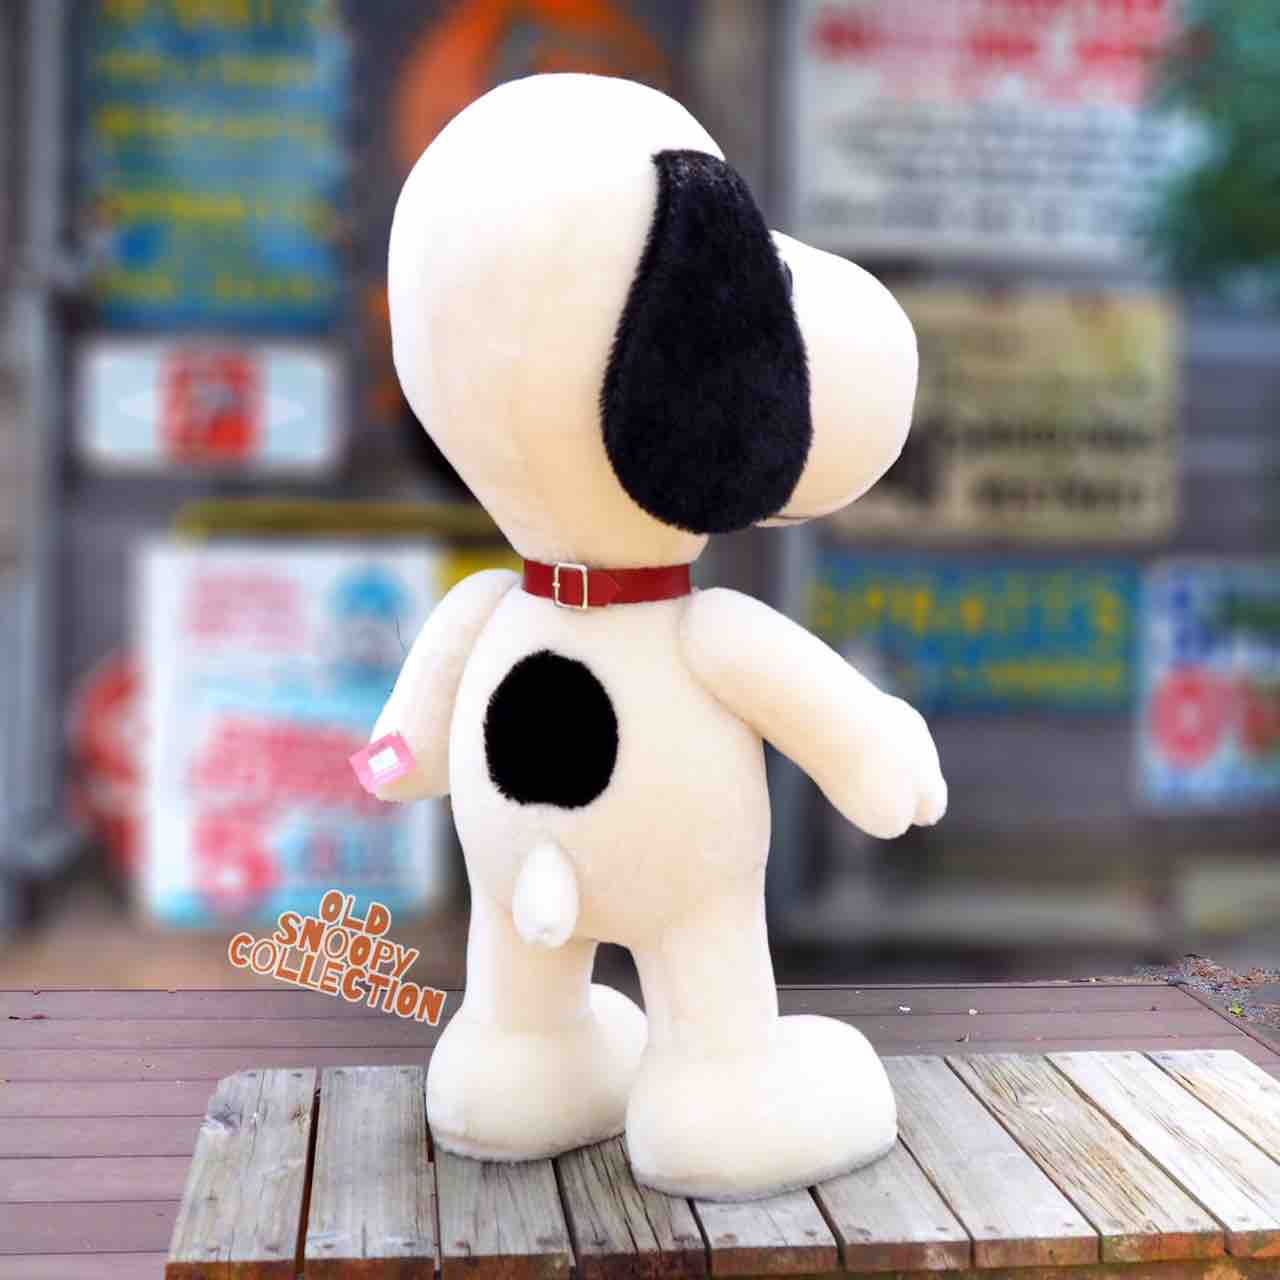 デカっ シュタイフ社スヌーピー初登場 The Old Snoopy Collection